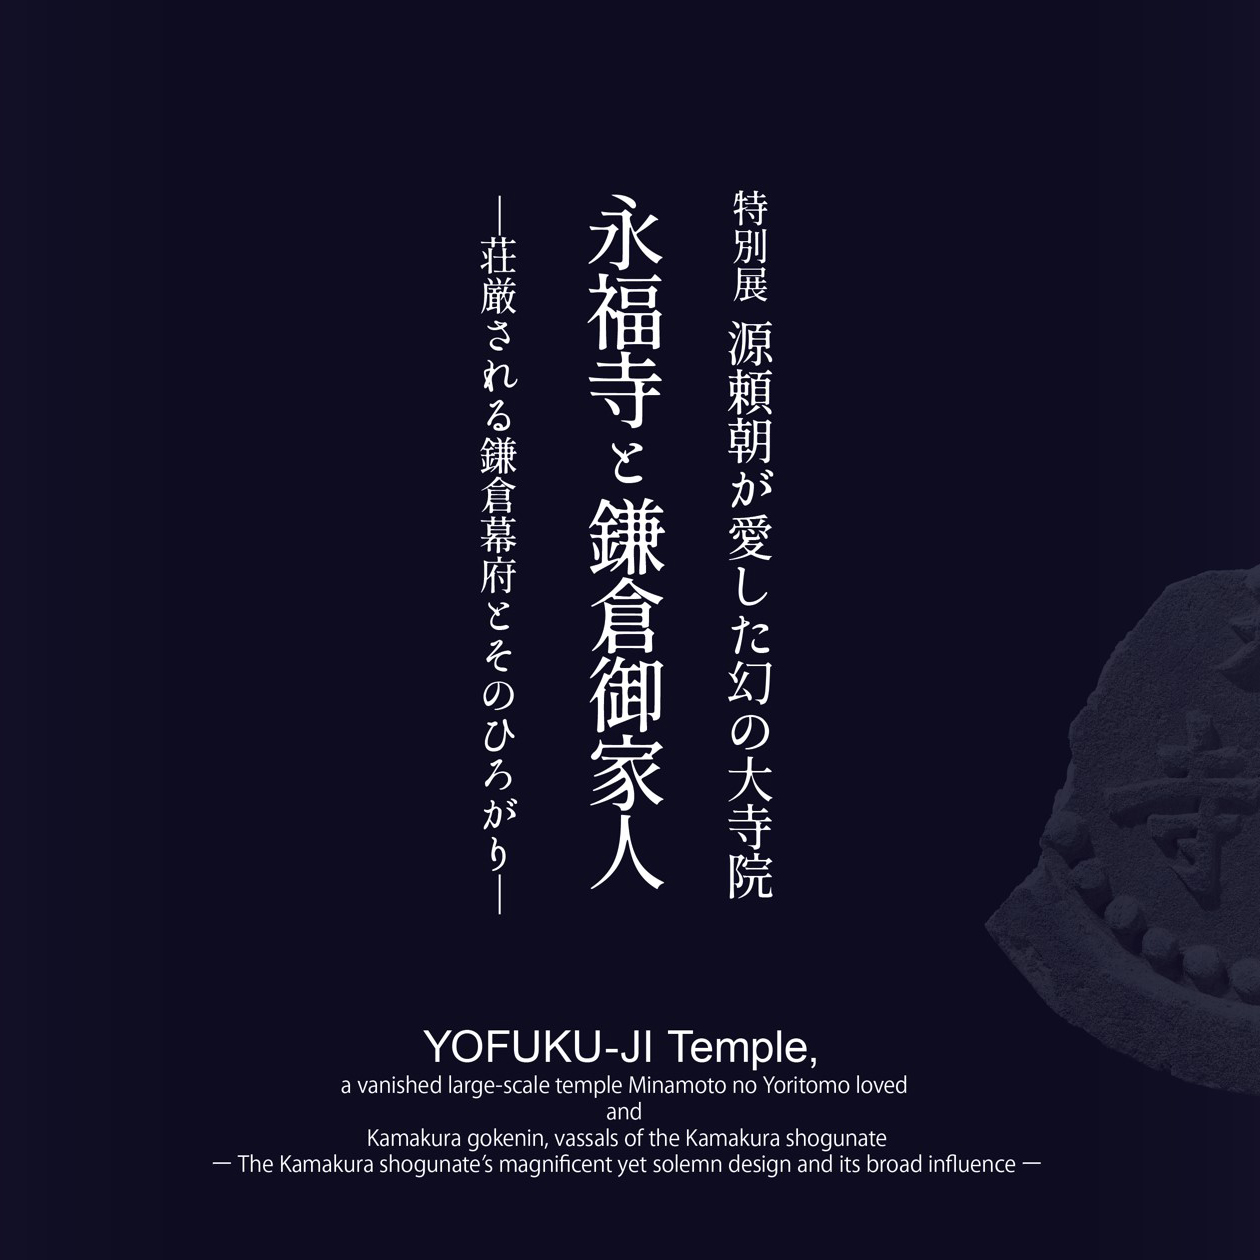 神奈川県の動画広報「かなチャンTV」で特別展「永福寺と鎌倉御家人」の展示解説動画（永福寺と瓦）を紹介しています